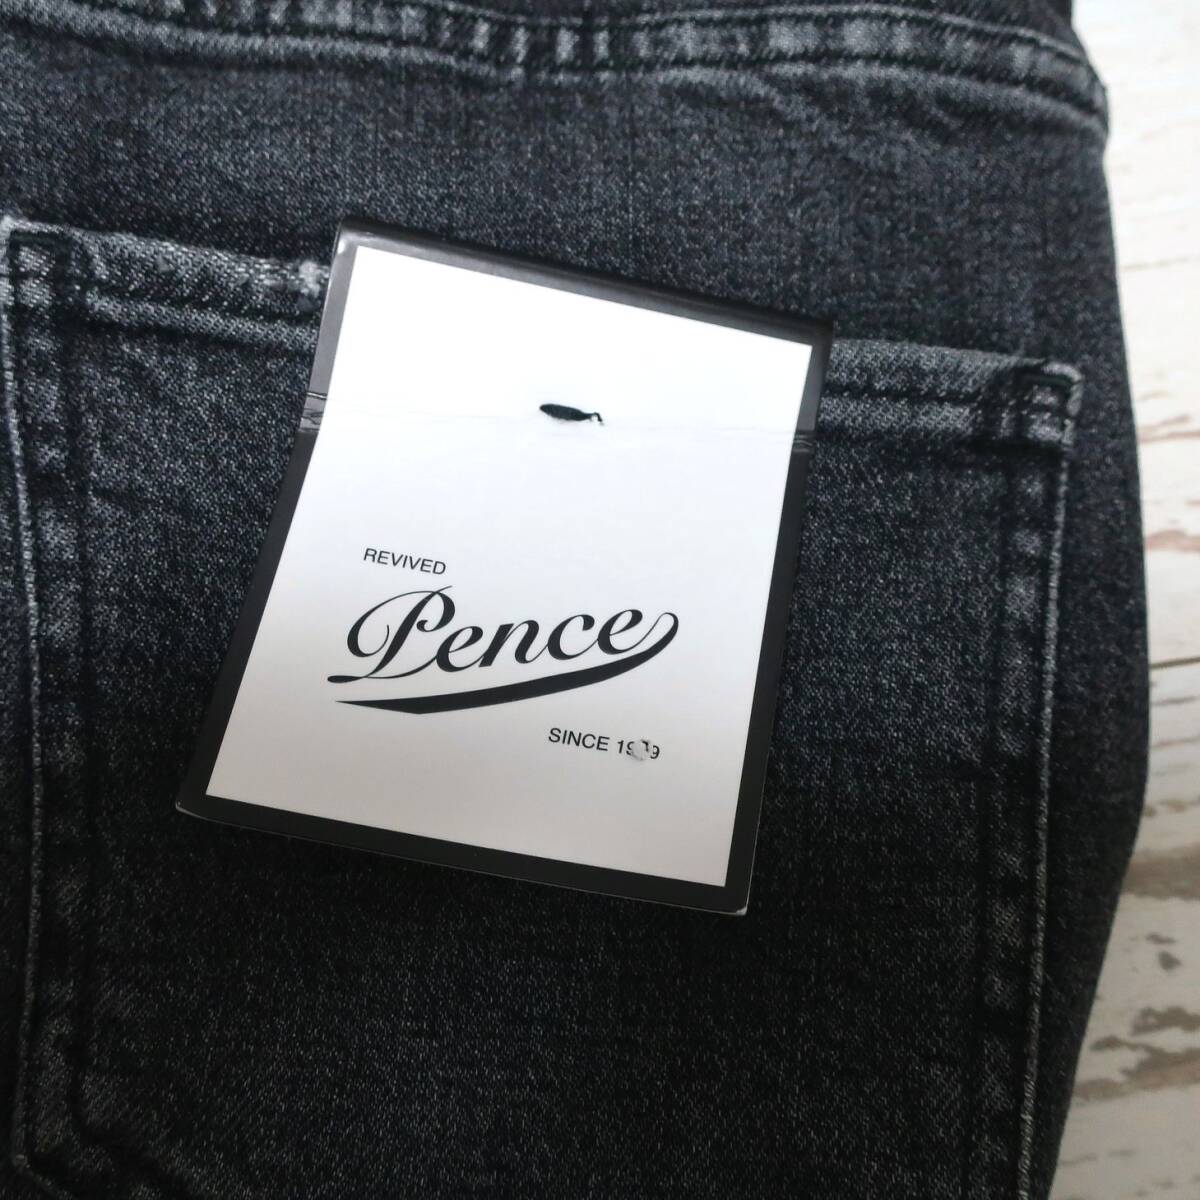 新品 未使用 PENCE 1979 ペンス メンズ 欧州 イタリアン 美脚 ジーンズ テーパード スリム パンツ デニム ブラック 黒 グレー W29 Sサイズ _画像8